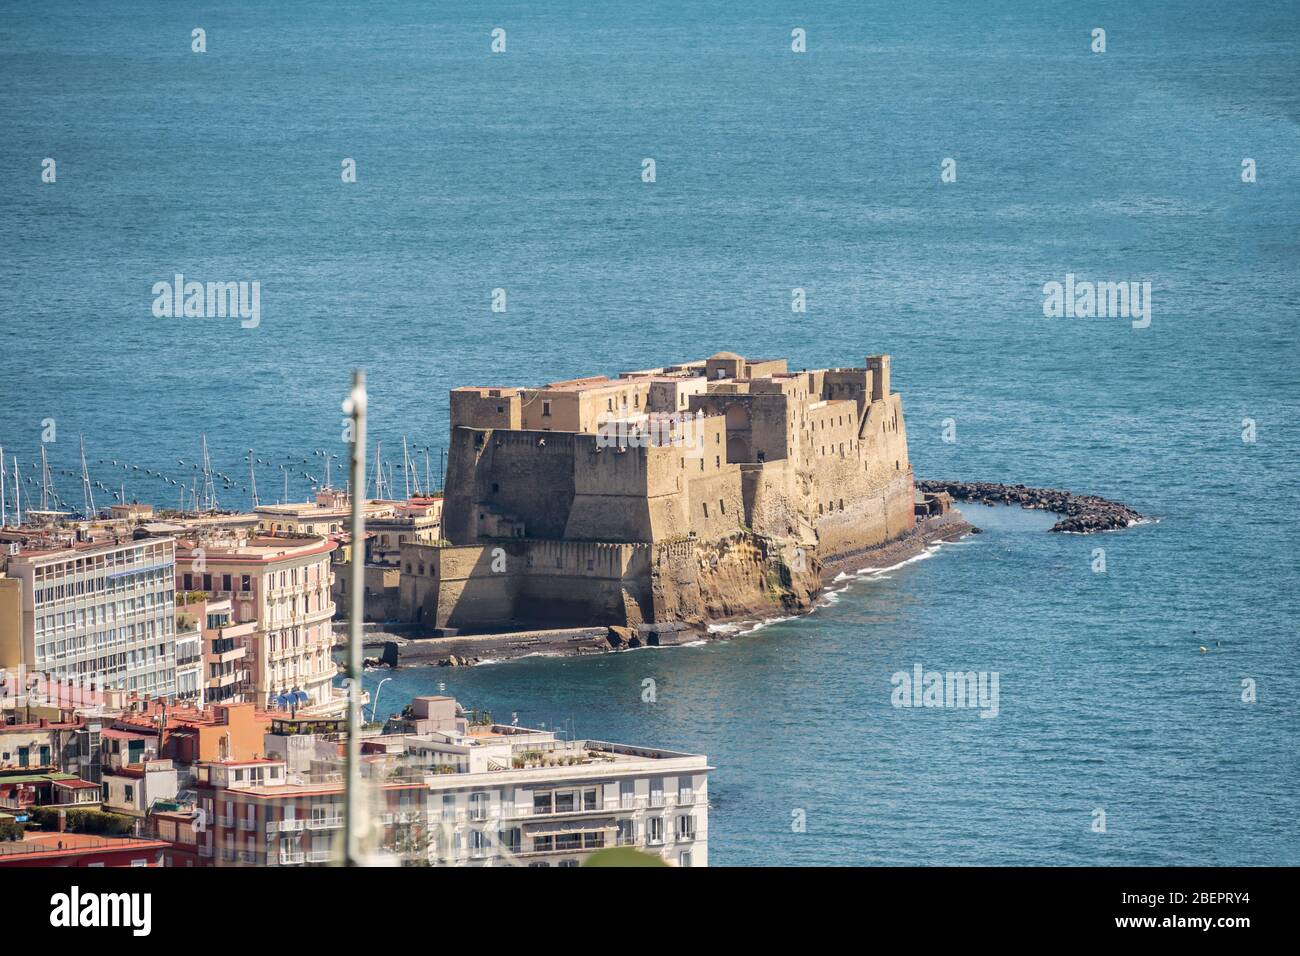 Luftaufnahme der Burg Egg, castel dell'Ovo, im Golf von Neapel, Italien. Stockfoto